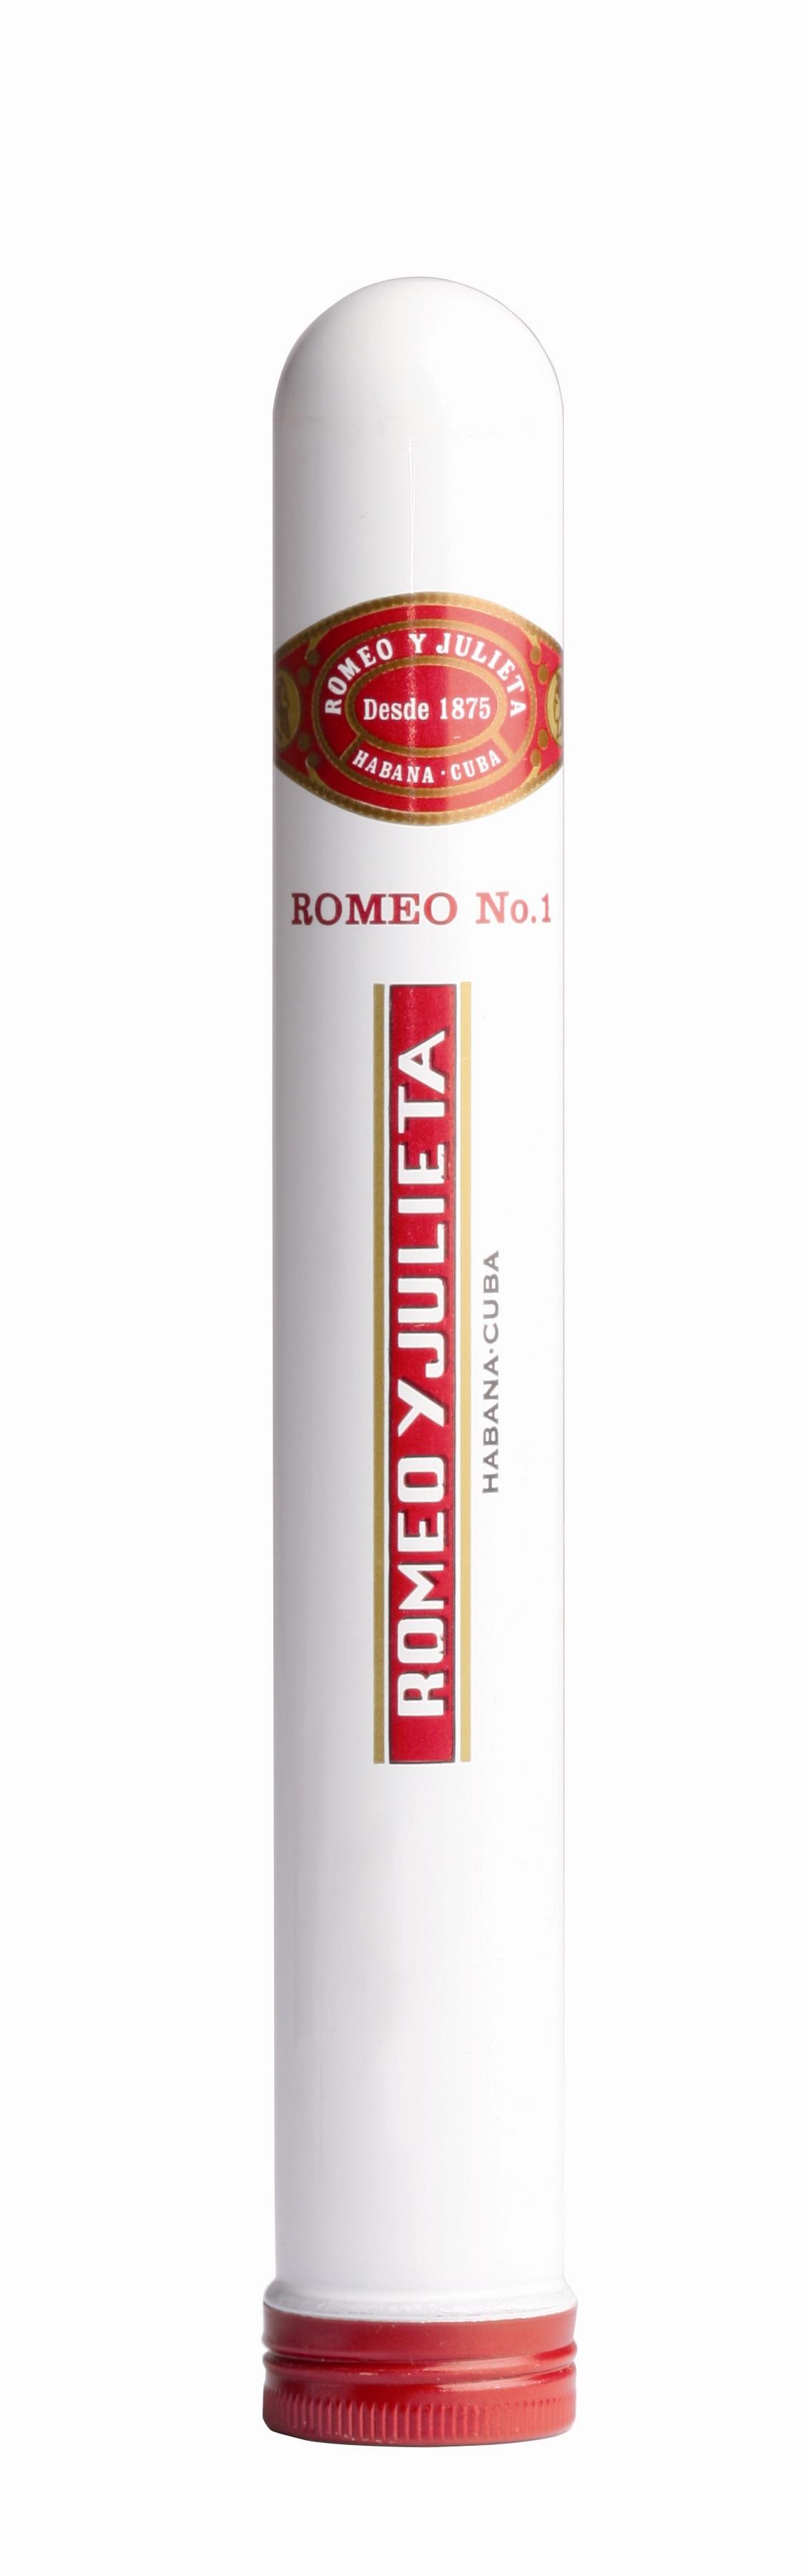 Romeo y Julieta Zigarren No. 1 1 Packung